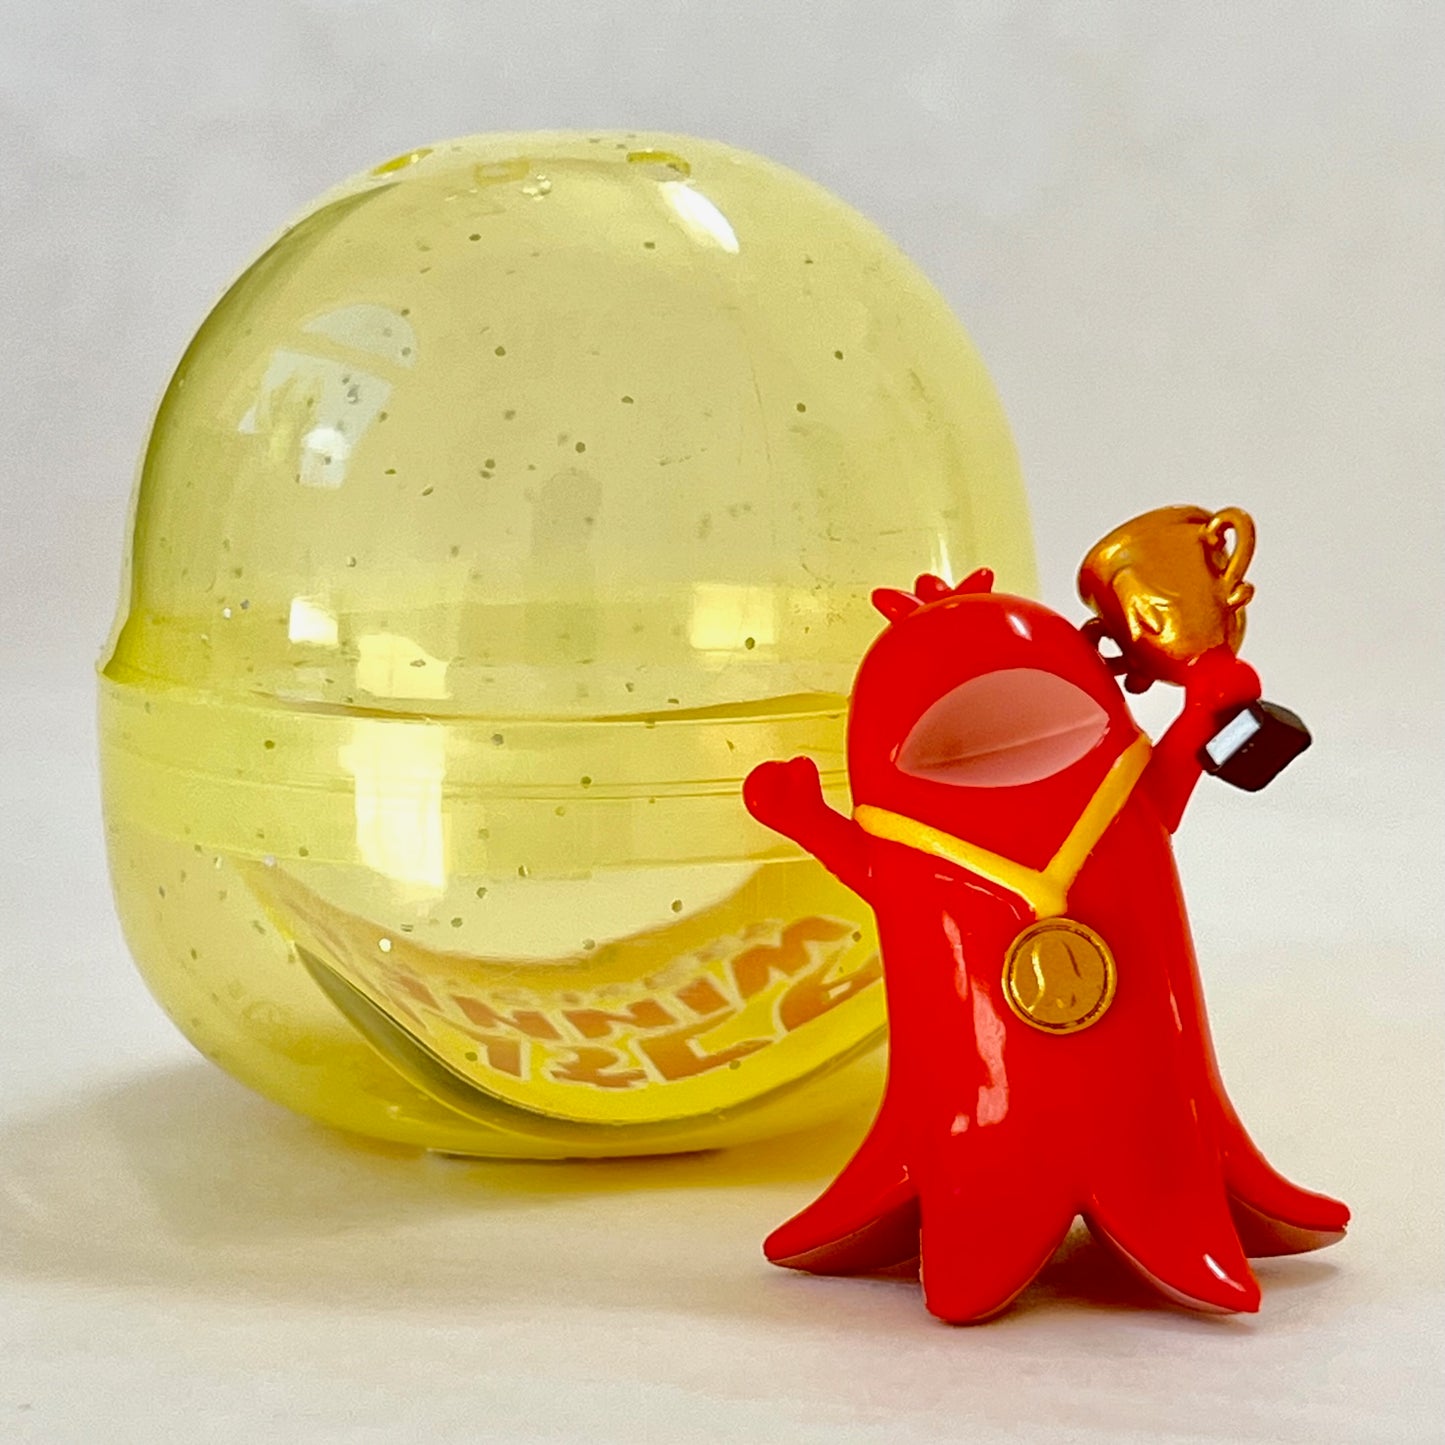 X 70264 Wiener Winner Figurine Capsule-DISCONTINUED